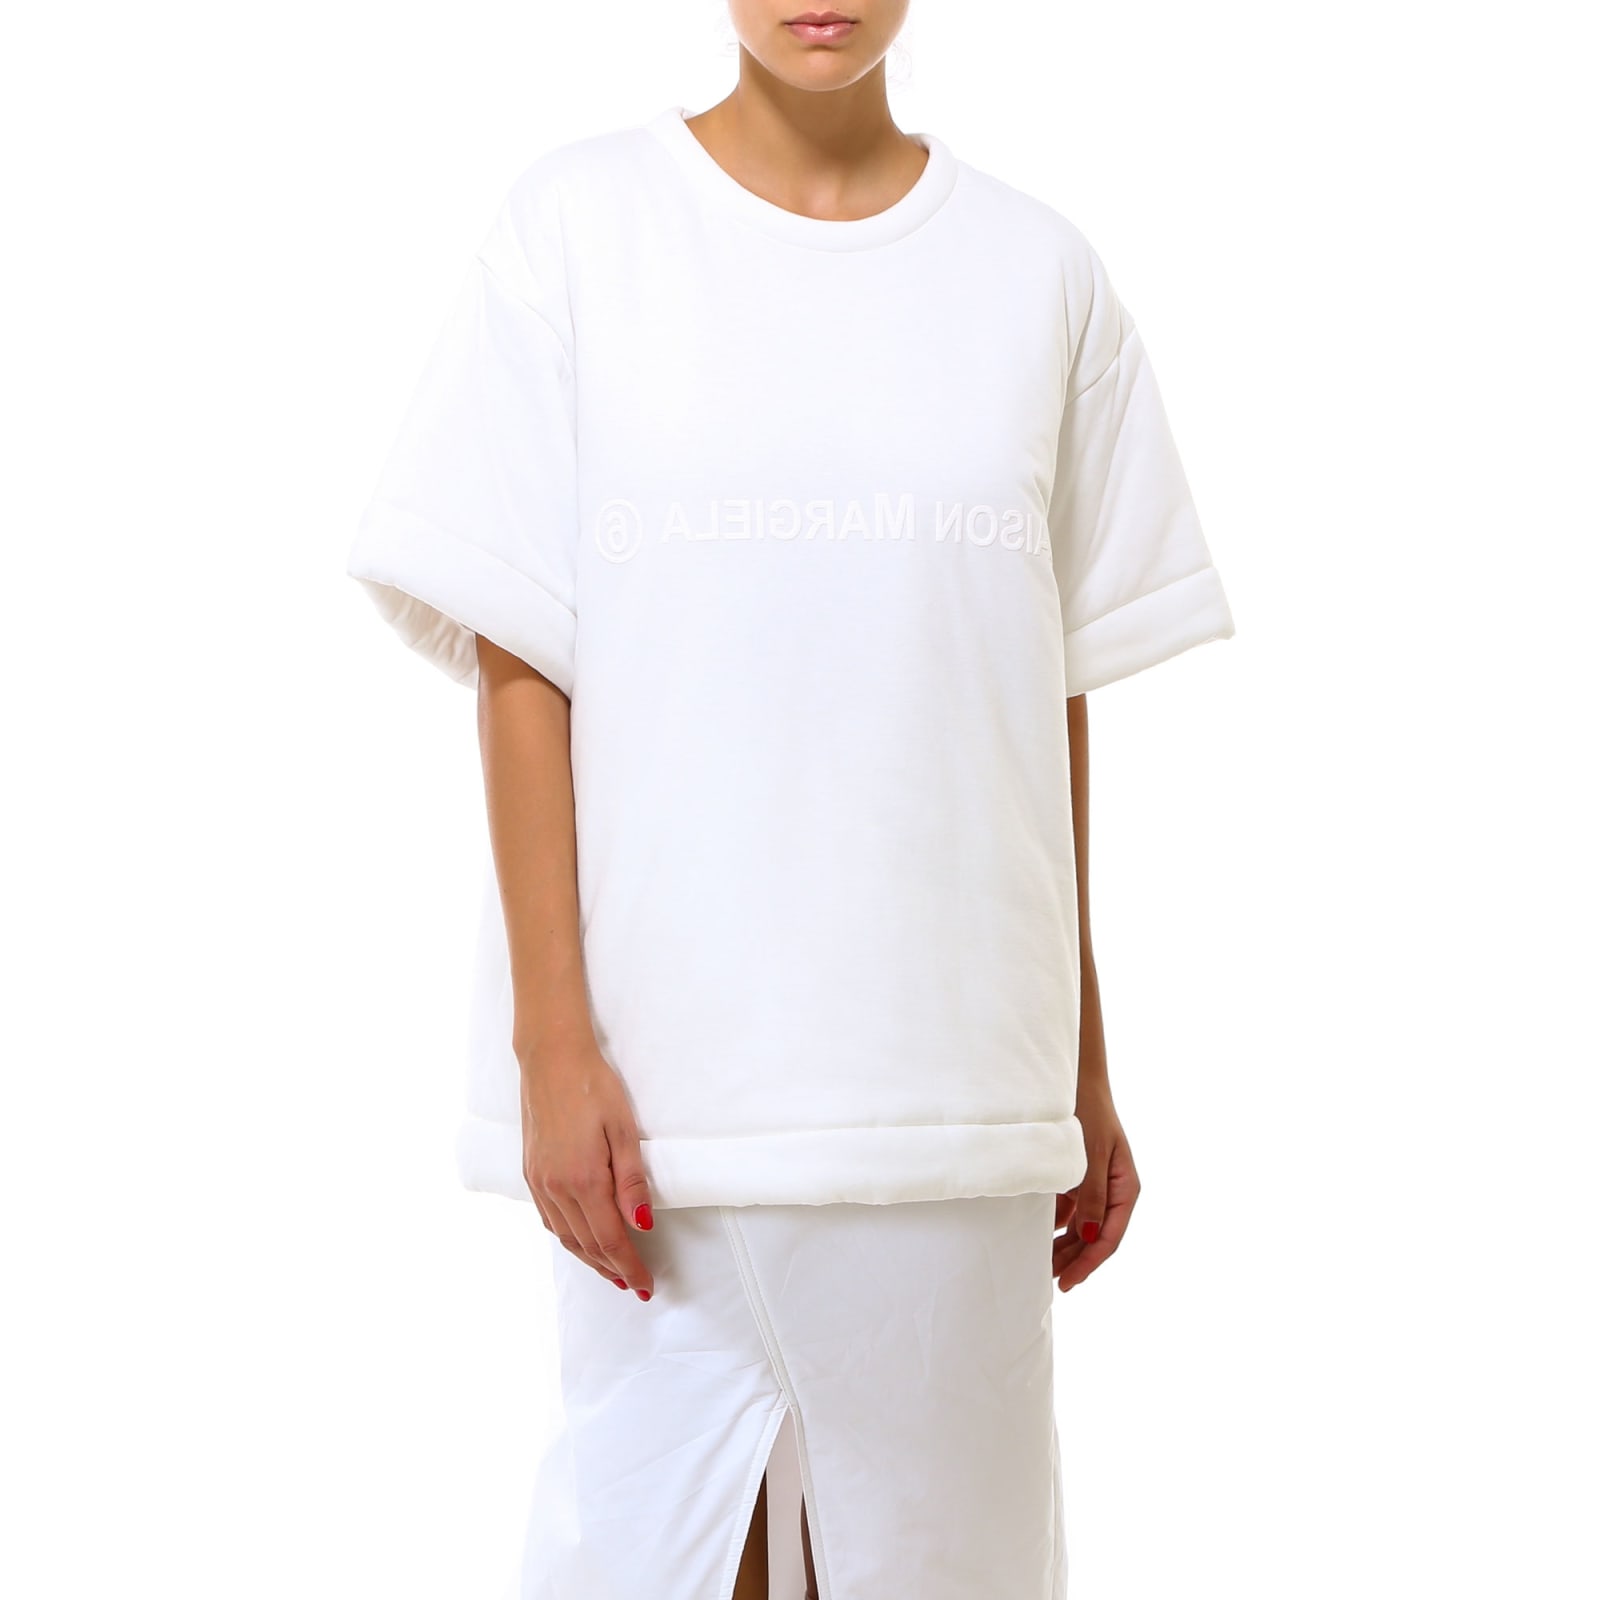 Mm6 Maison Margiela T-shirt In White | ModeSens